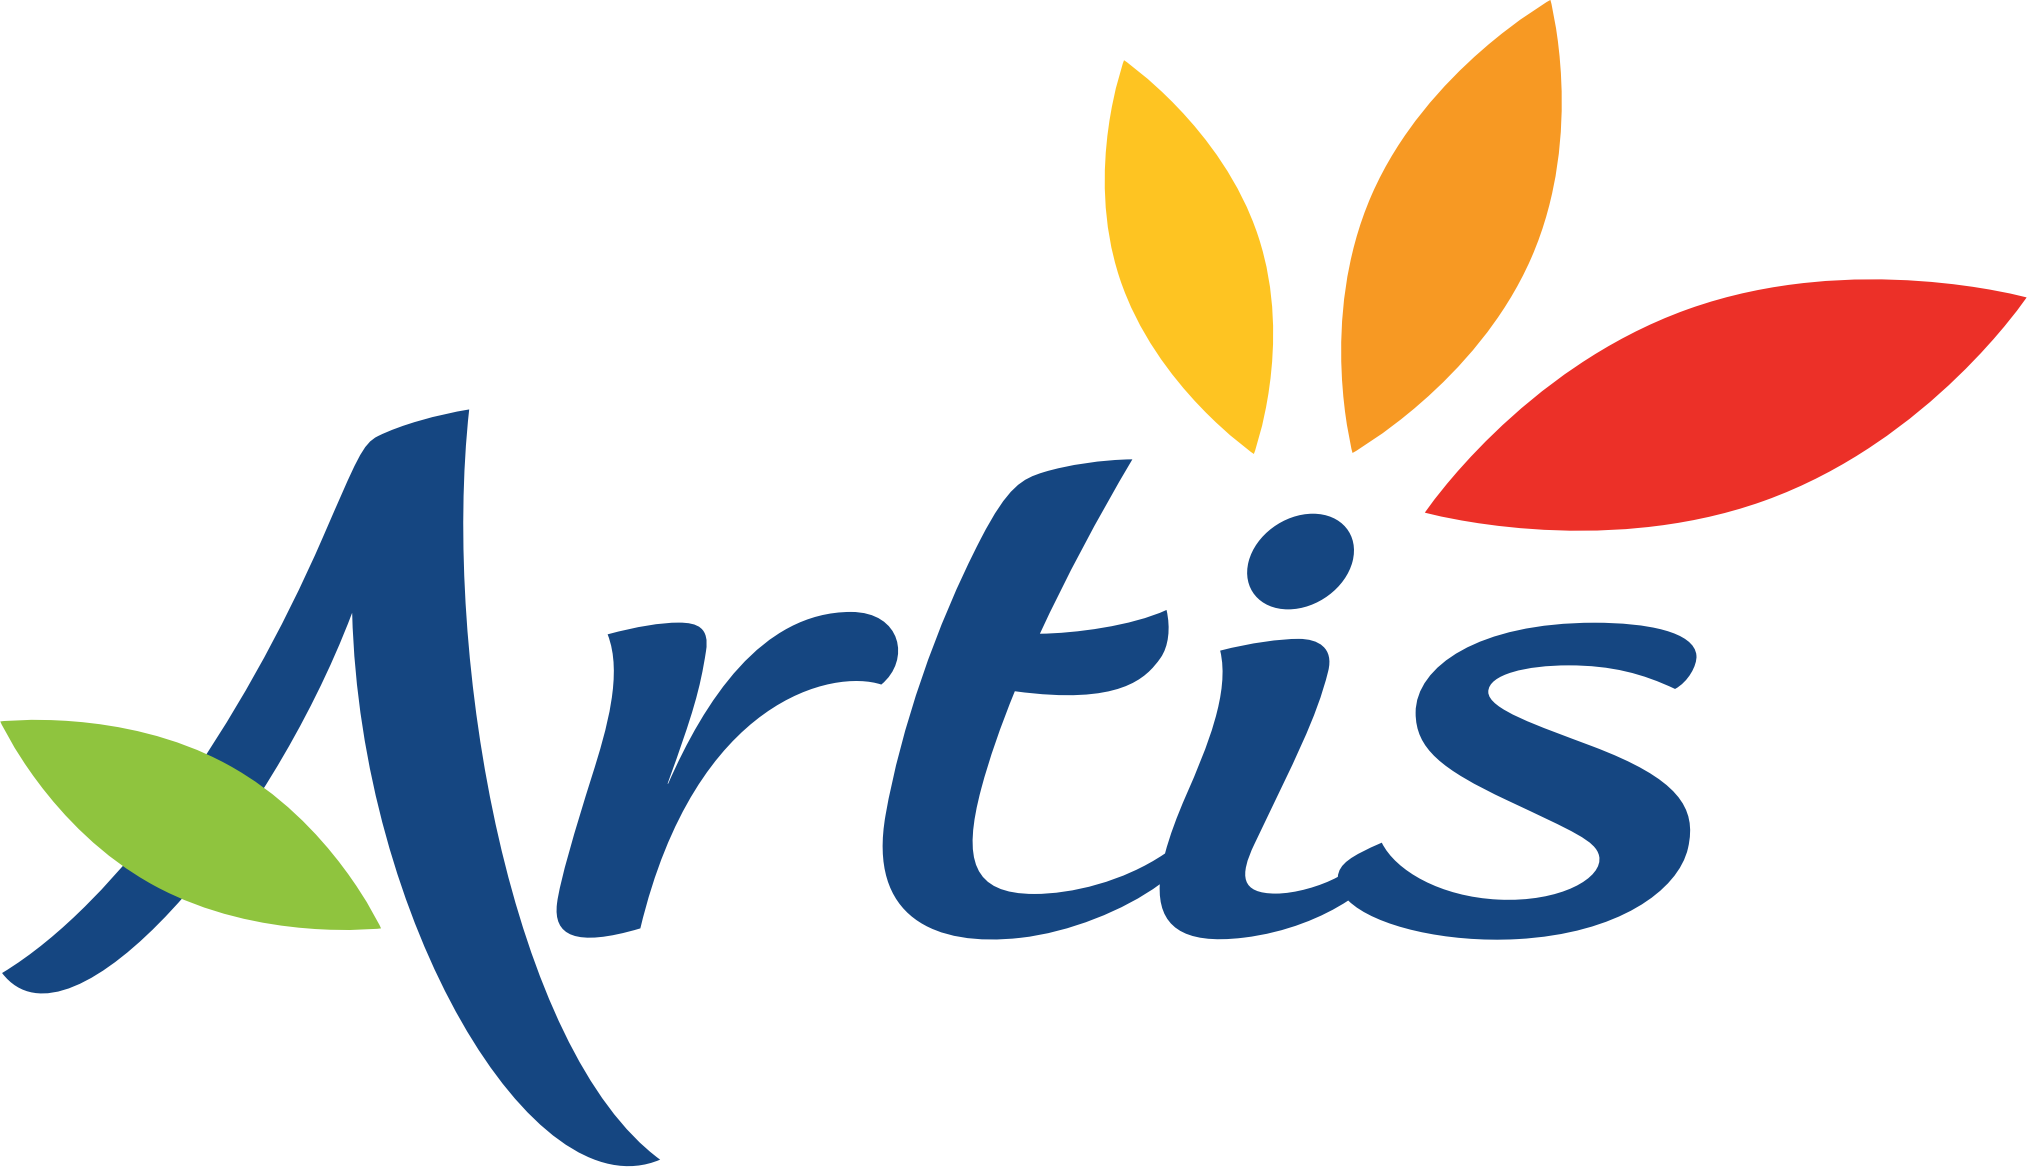 Logo Artis, le réseau de mobilité de la communauté urbaine d'Arras. Il s'occupe des communes de l'agglomération arrageoise.